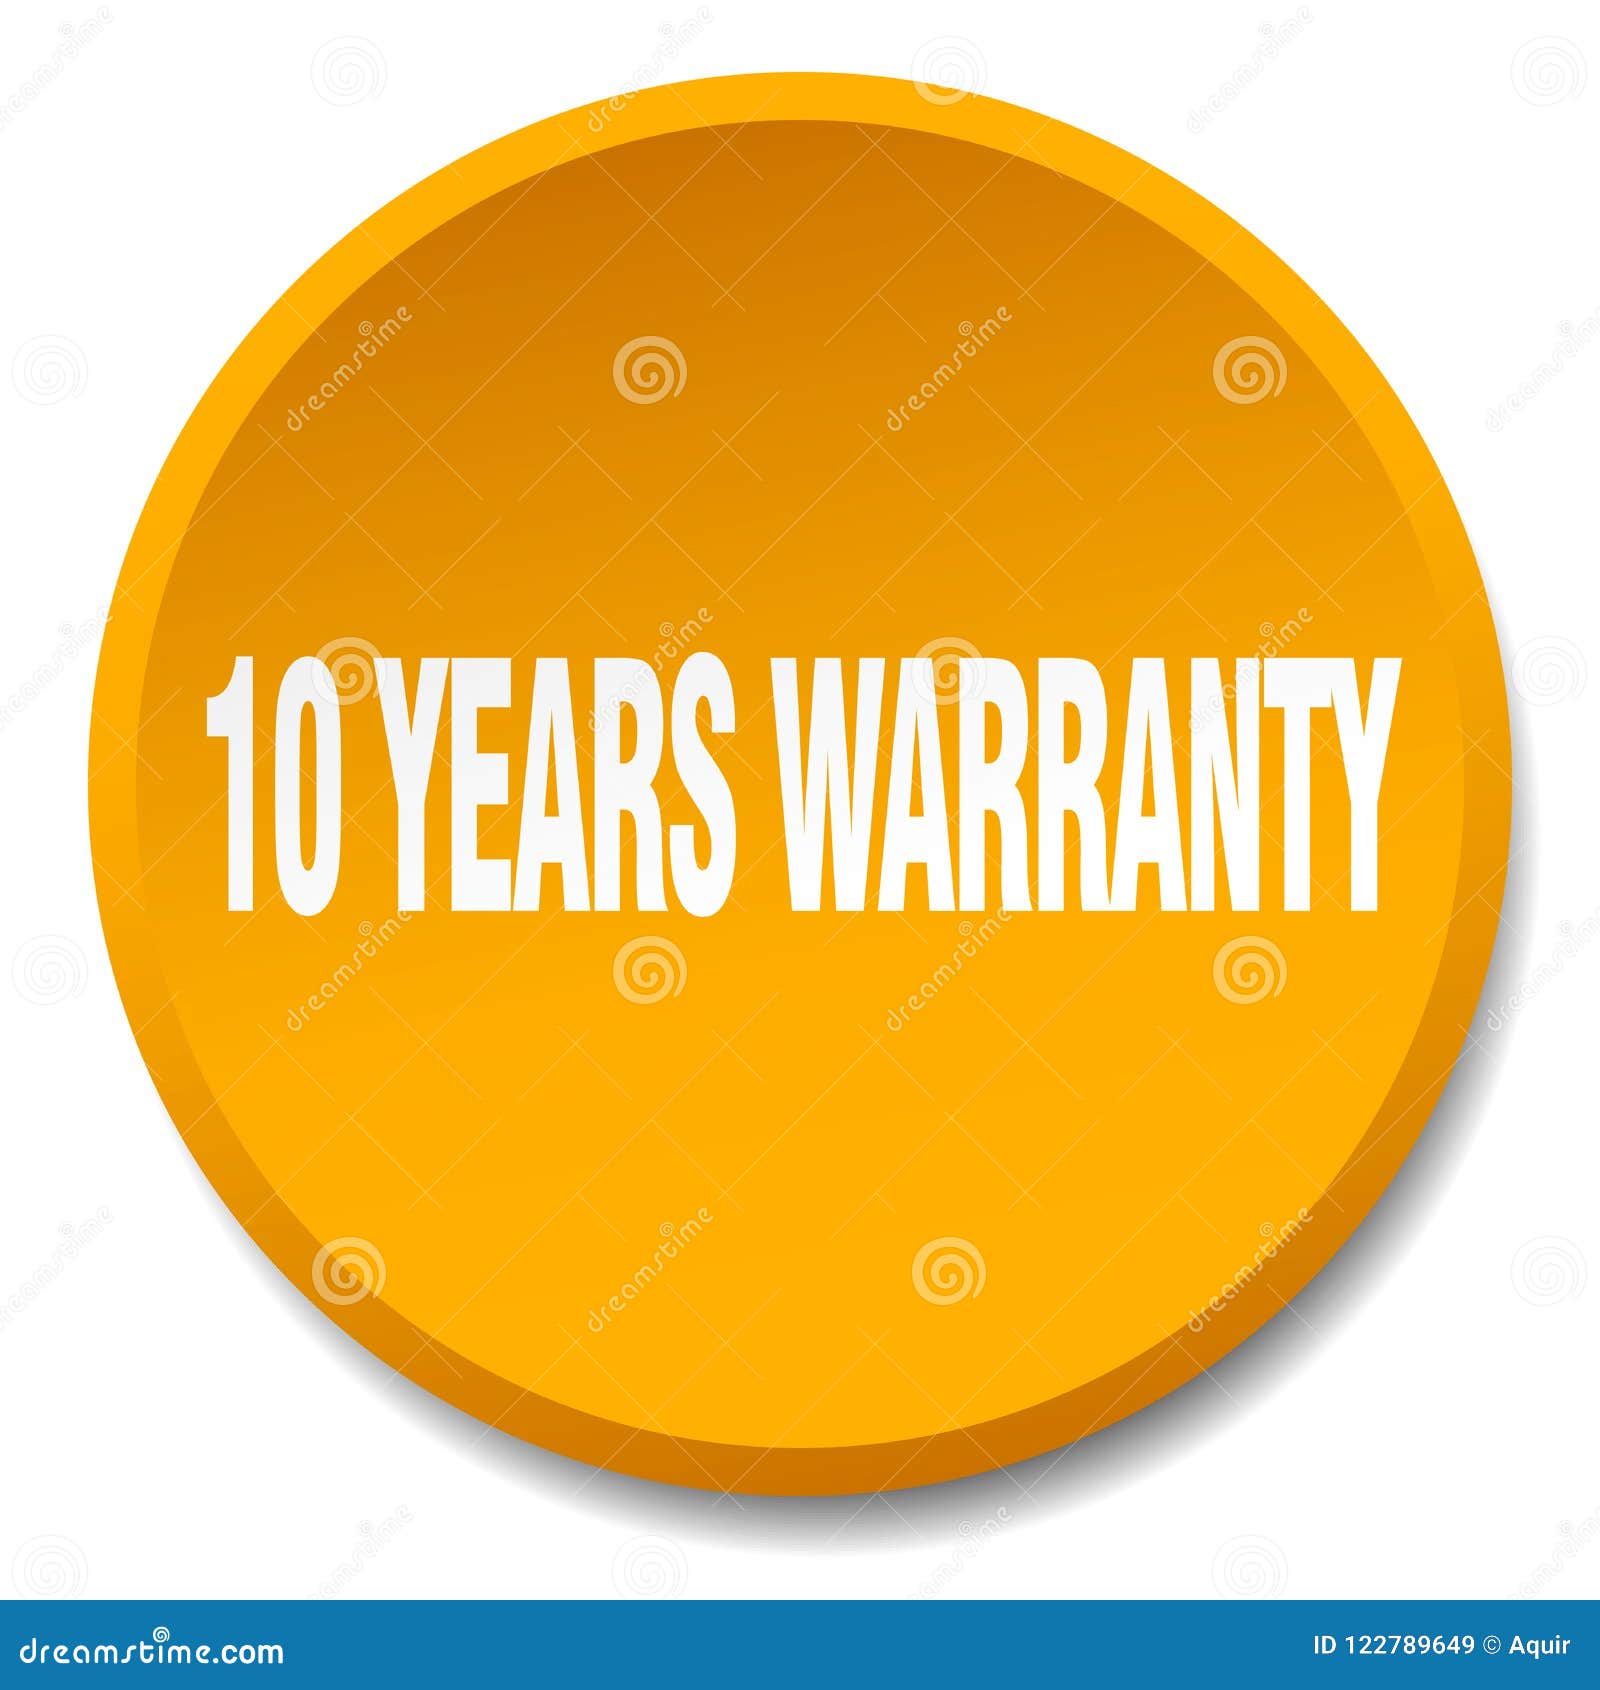 10 years warranty button. 10 years warranty round button isolated on white background. 10 years warranty